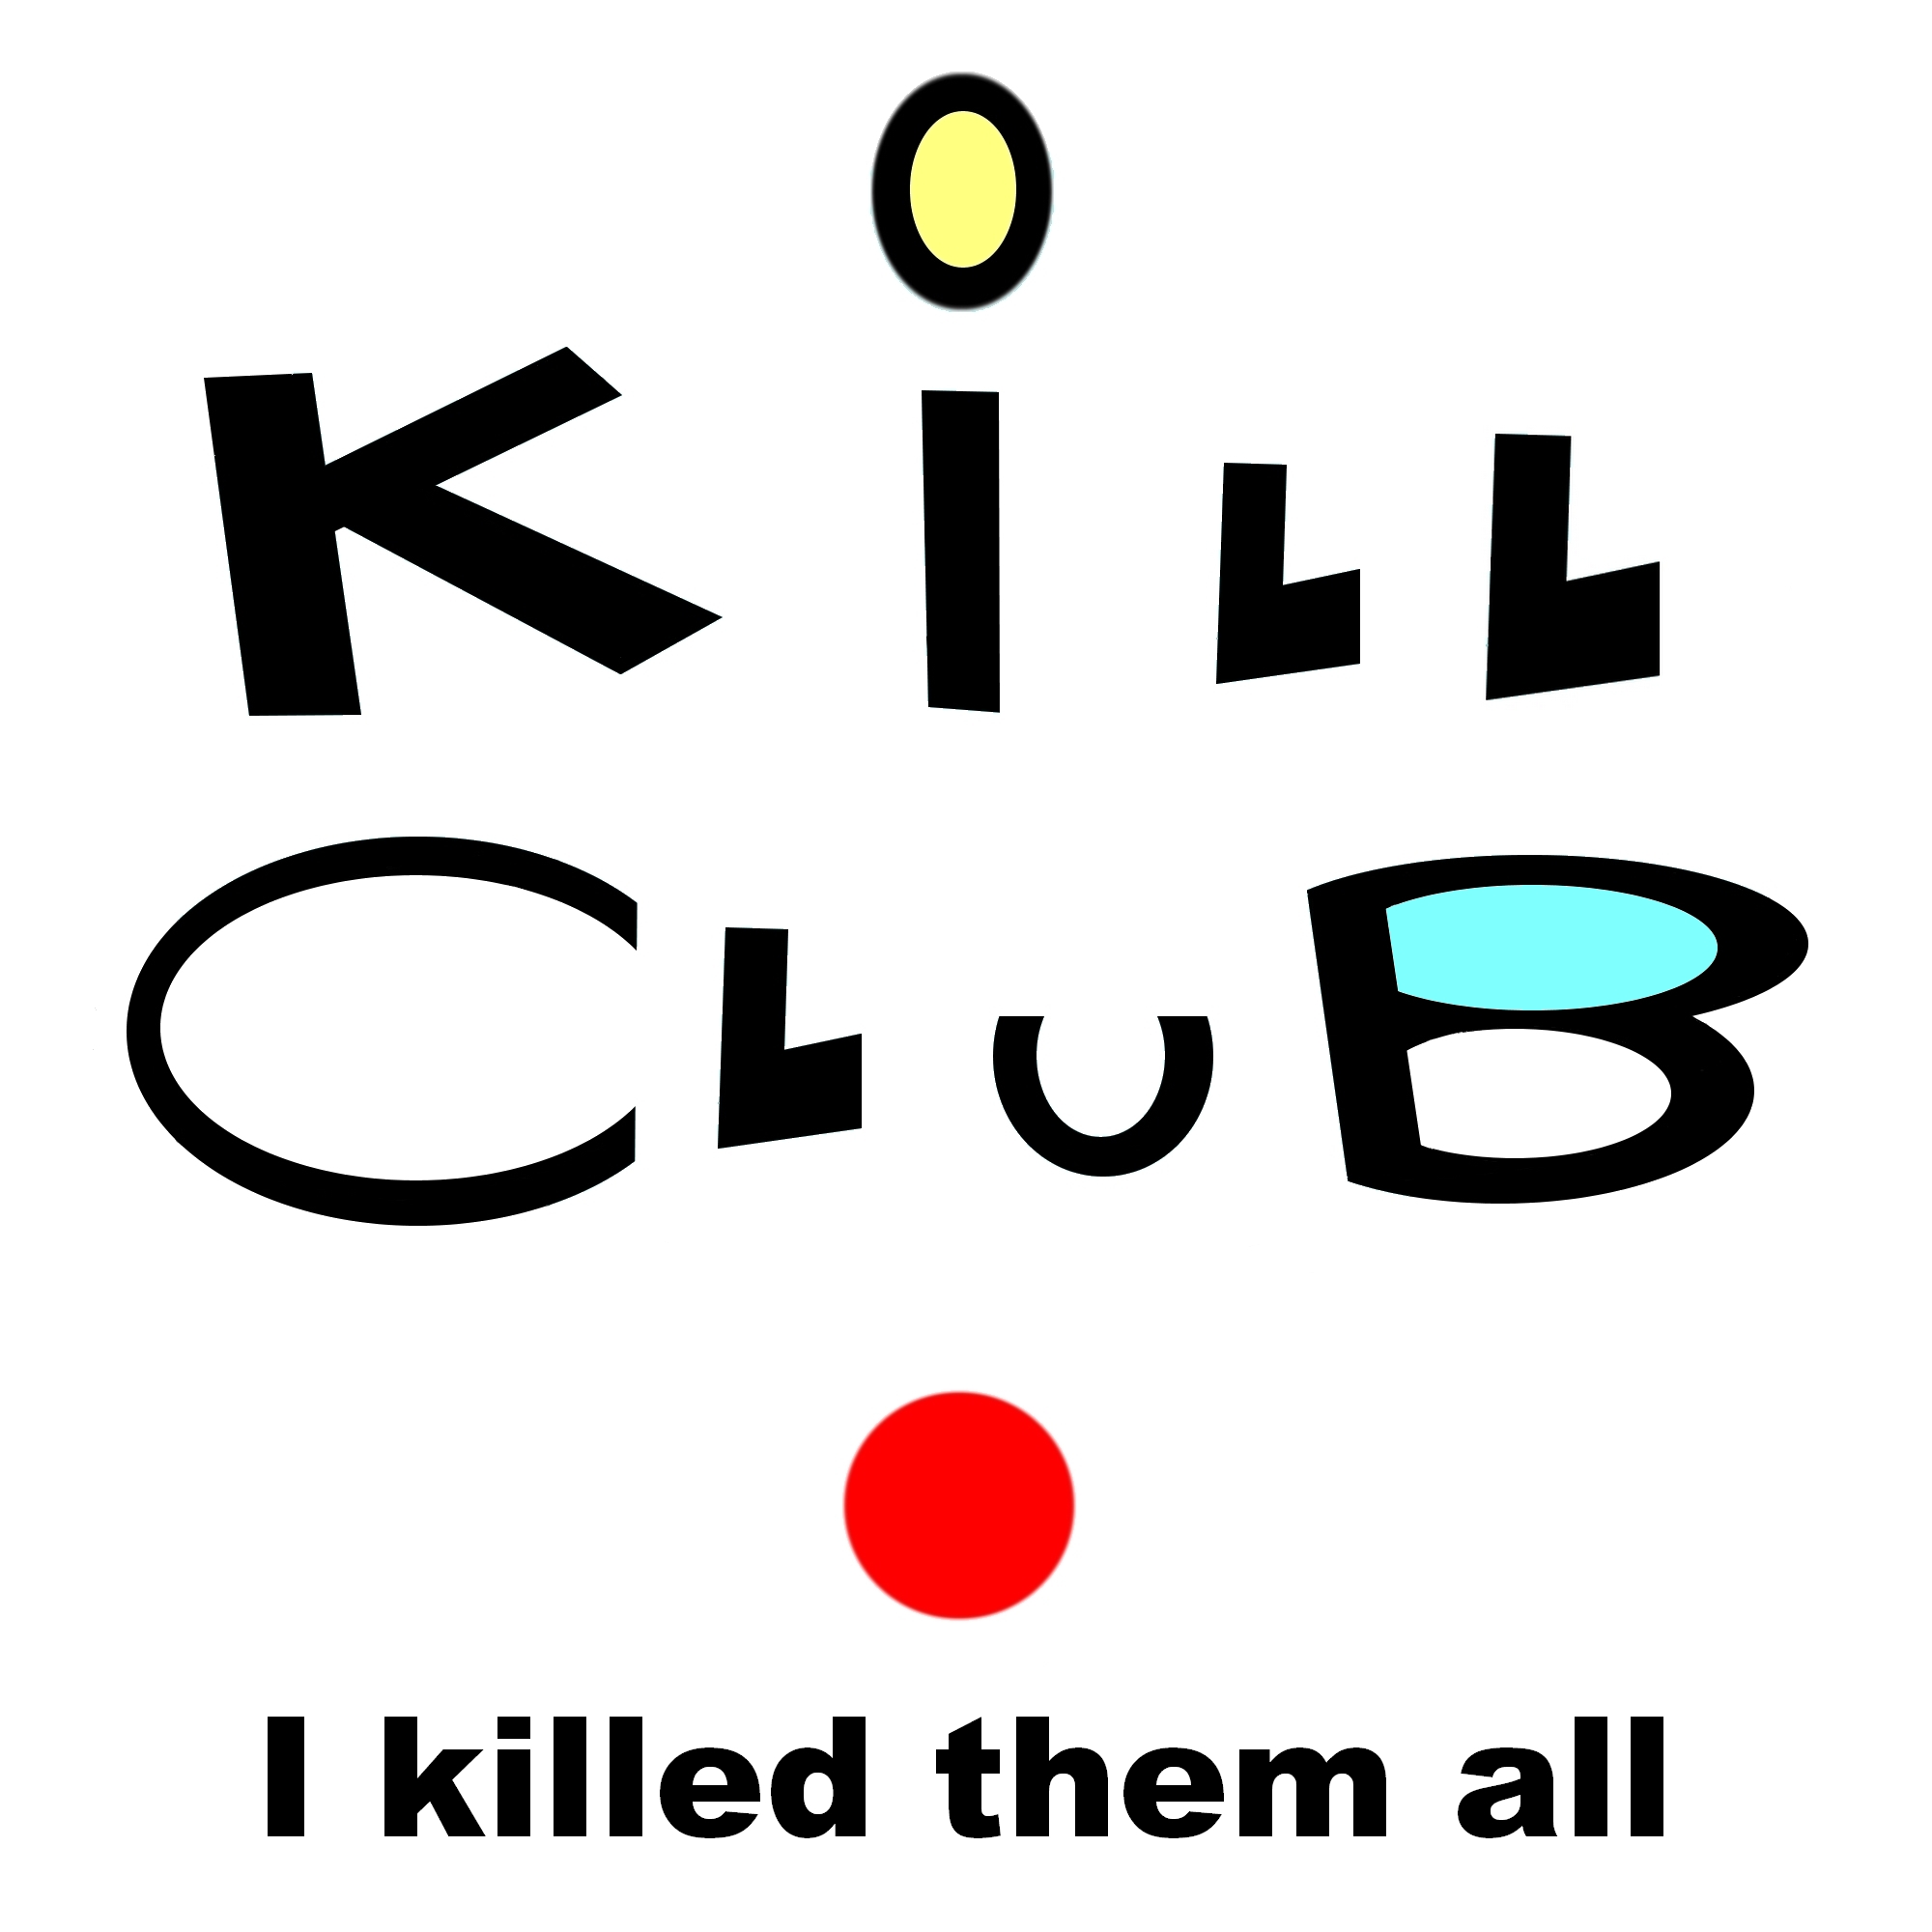 I killed them all